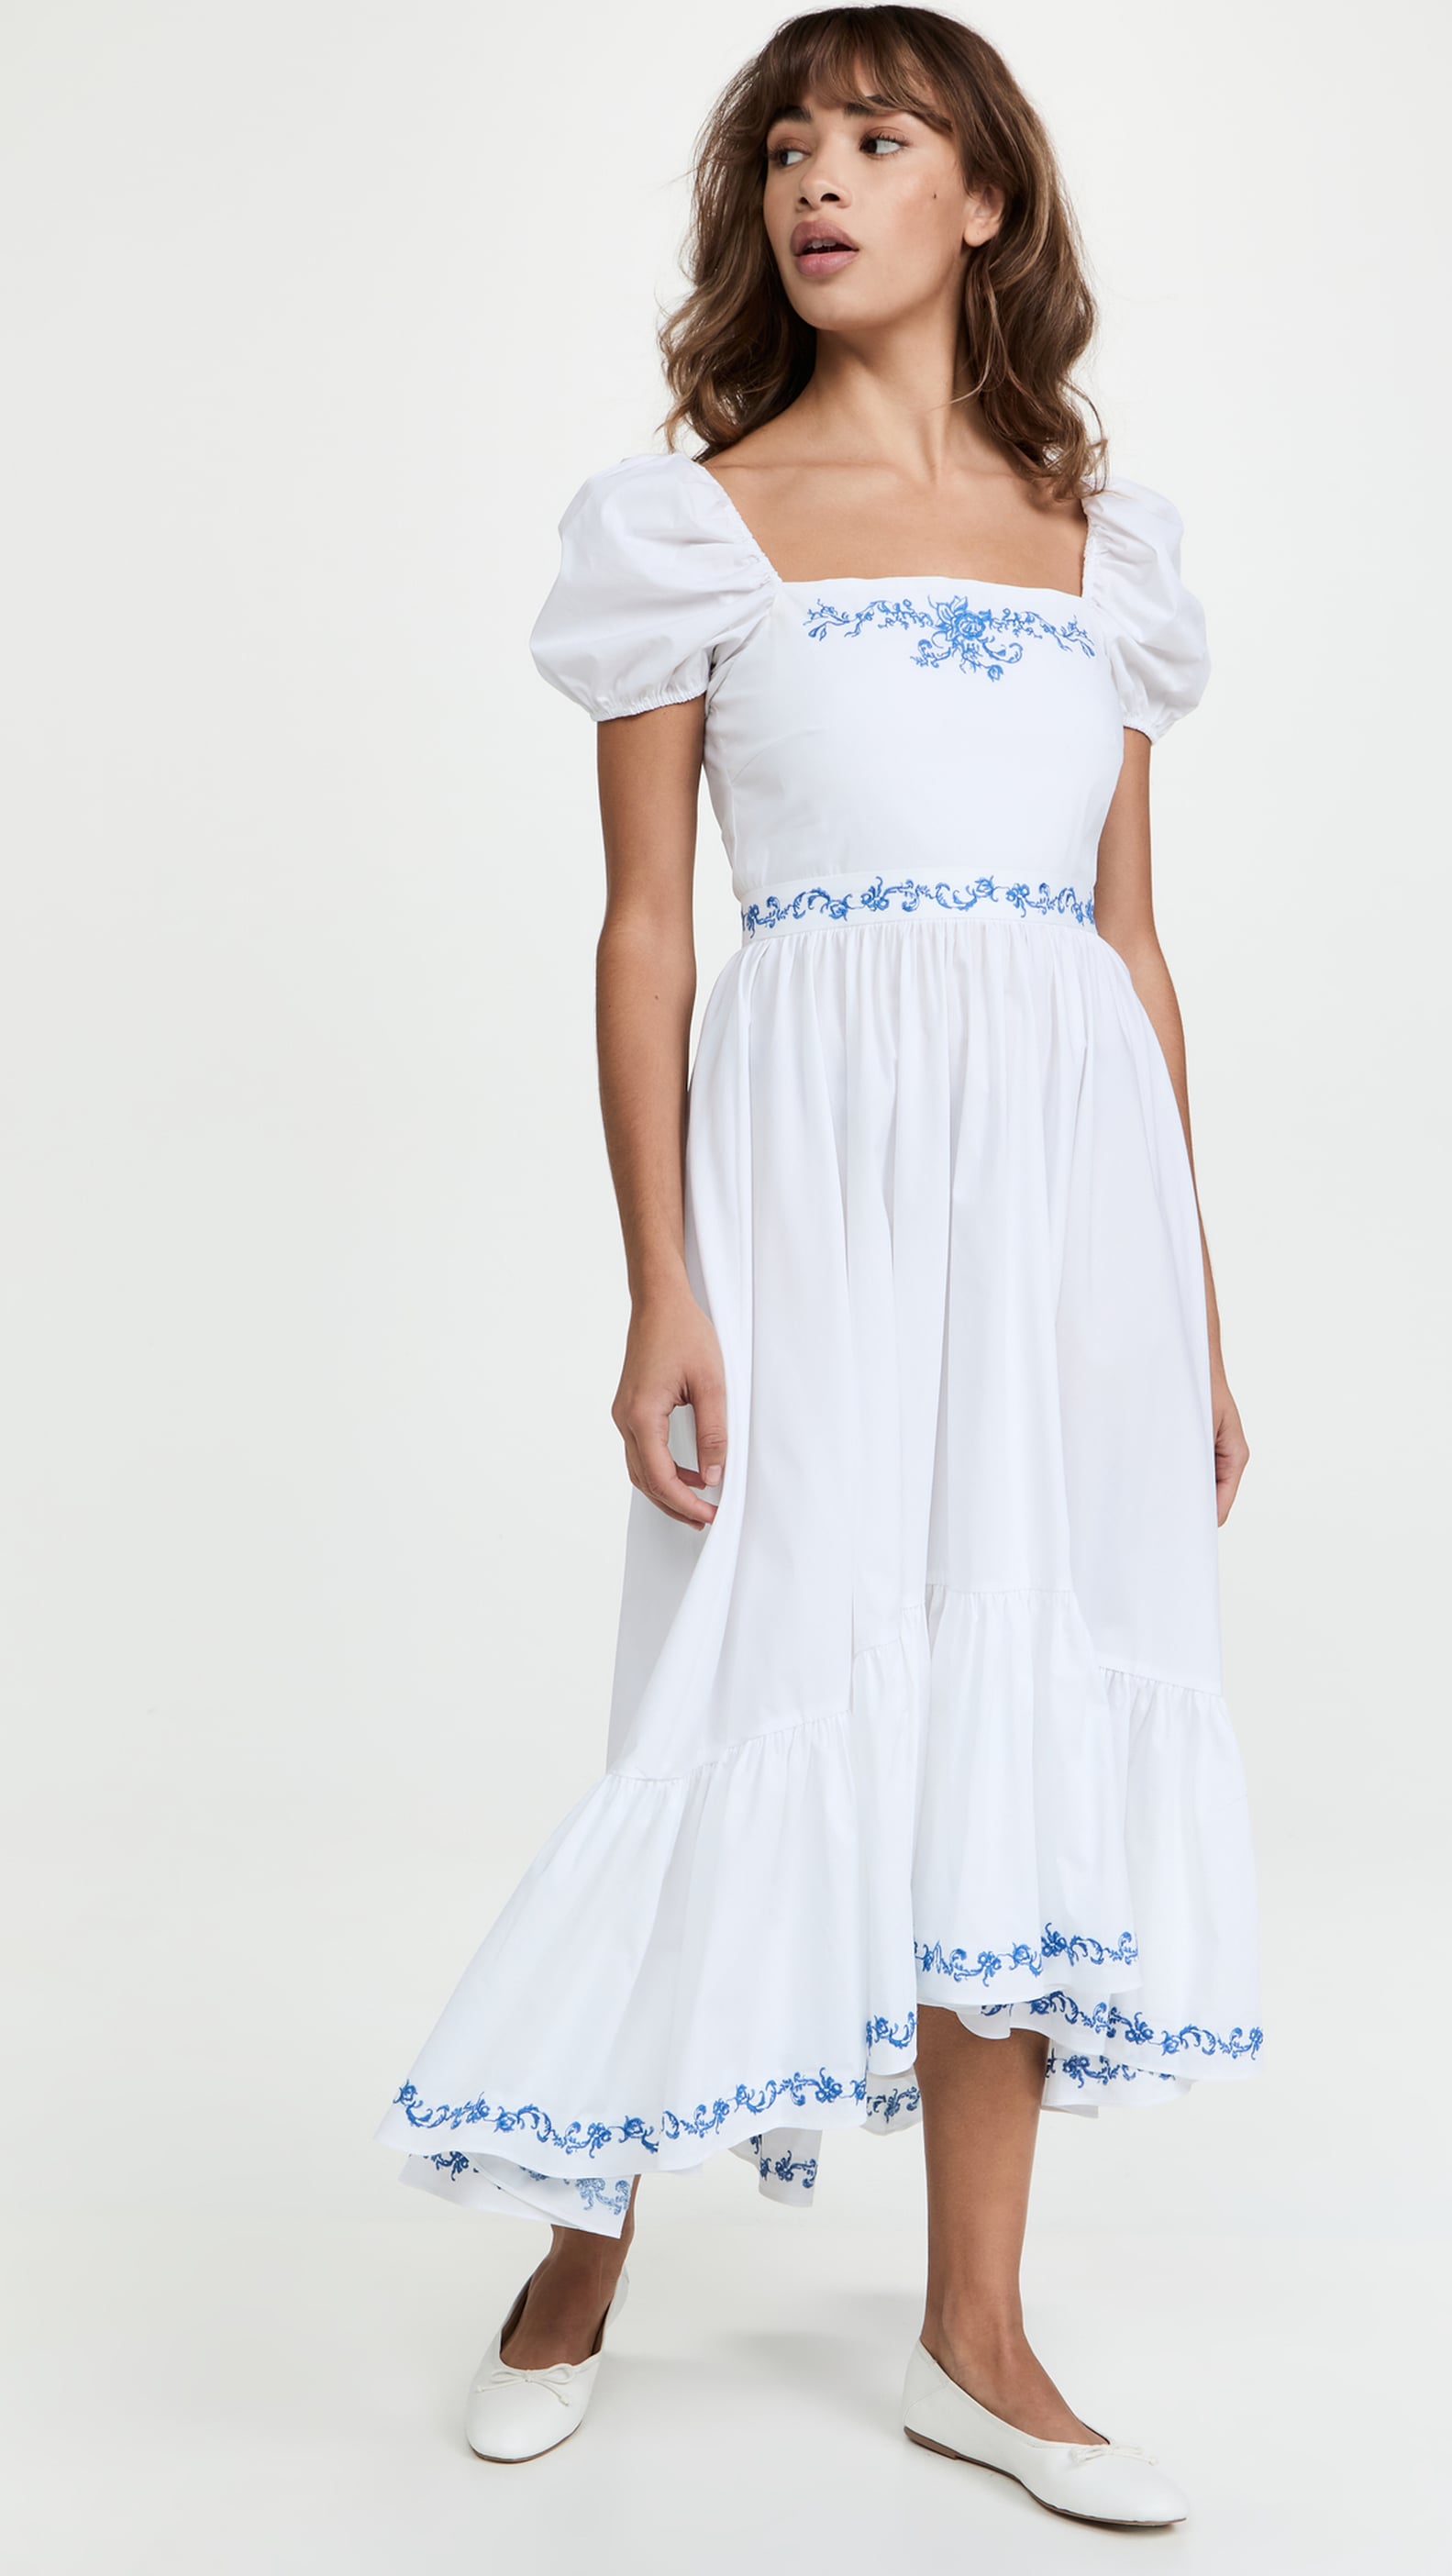 Best Summer Dresses on Sale 2022 | POPSUGAR Fashion